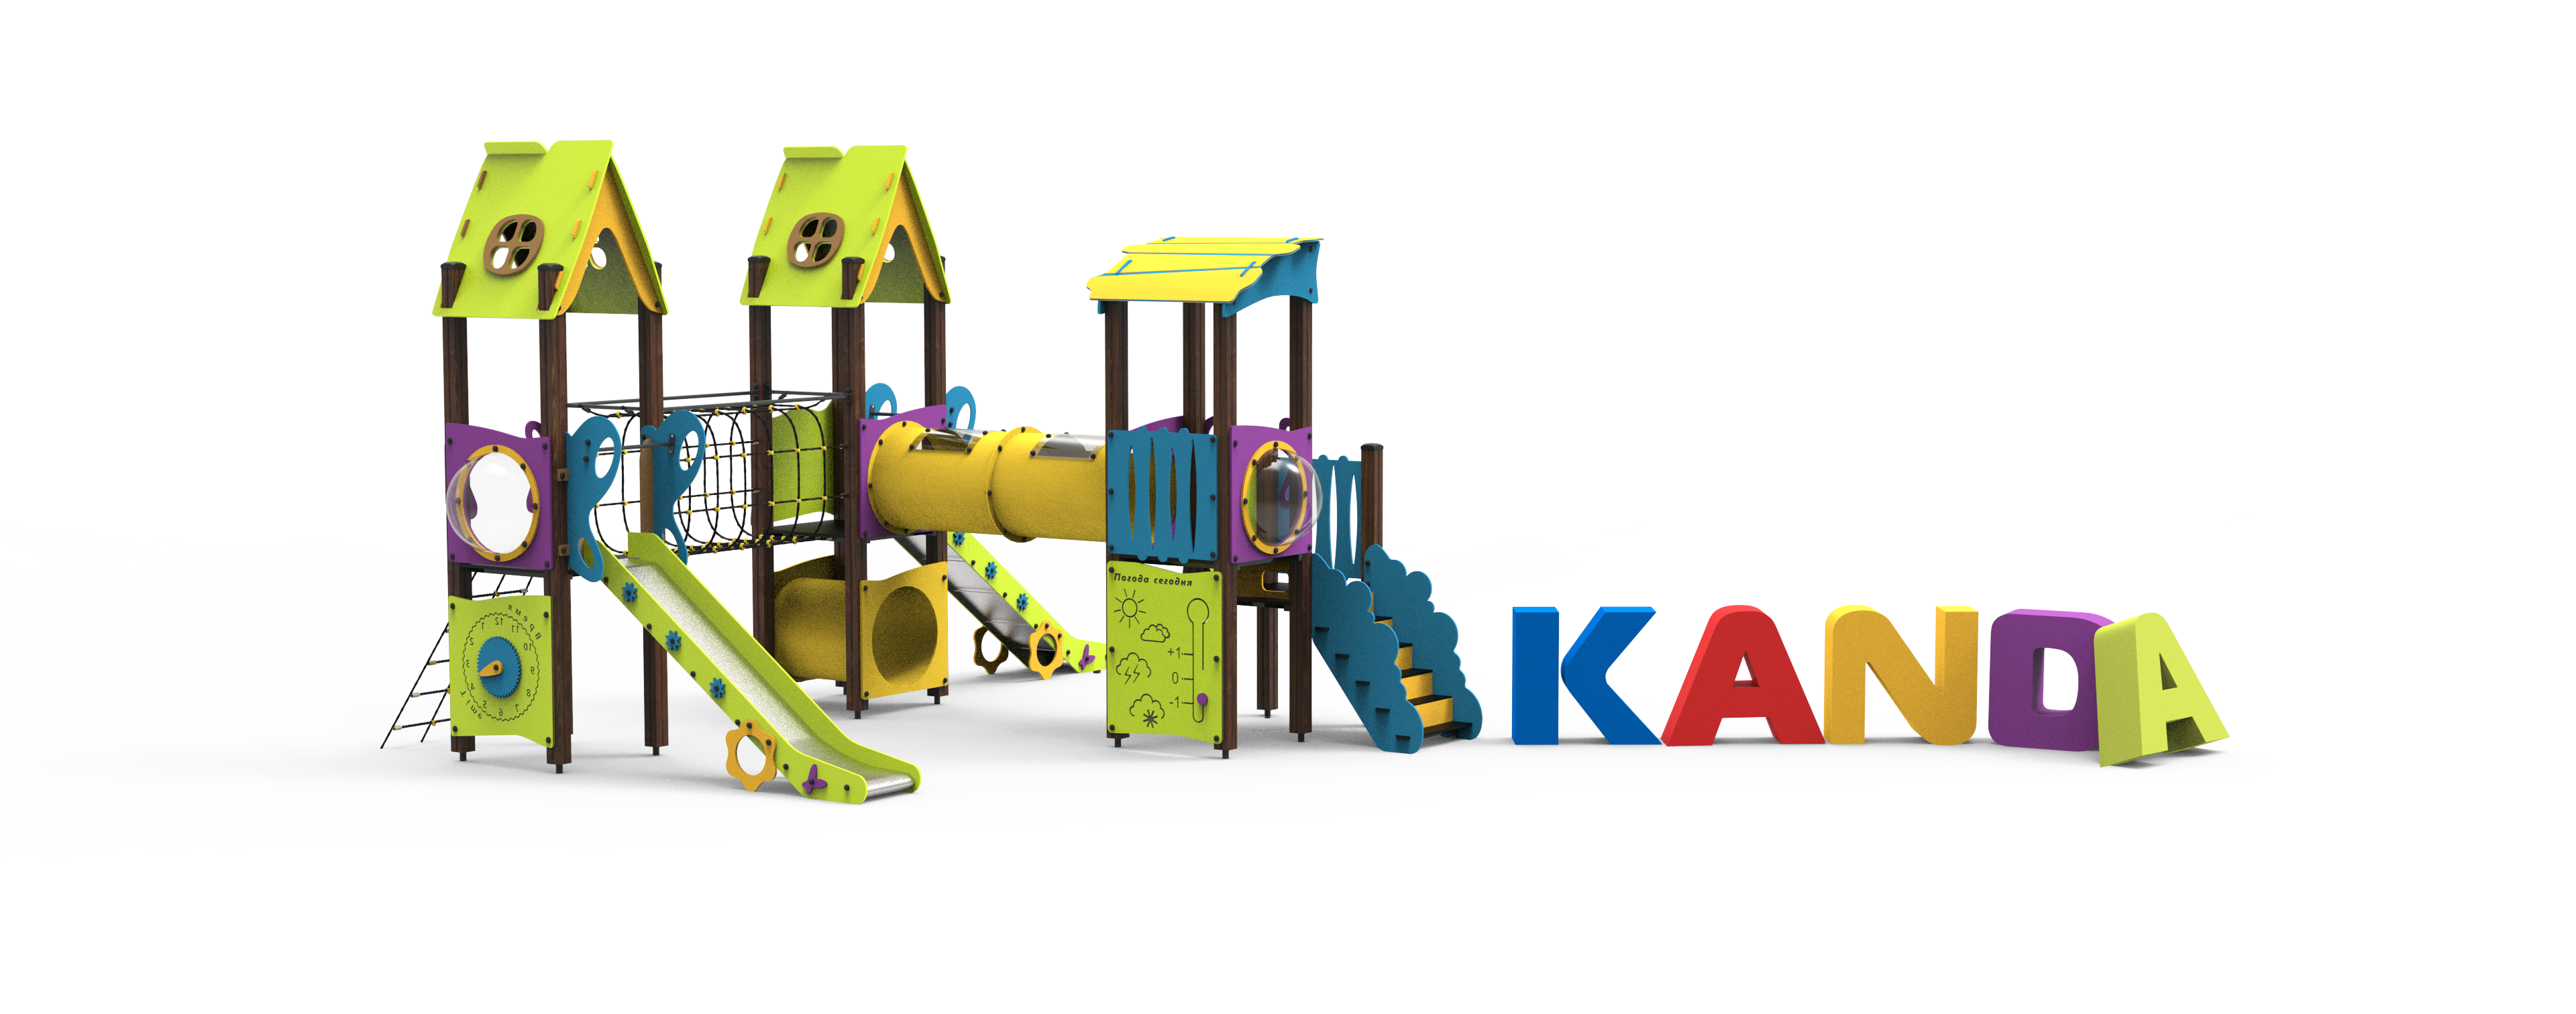 Оборудование для детских площадок серии "Канда"